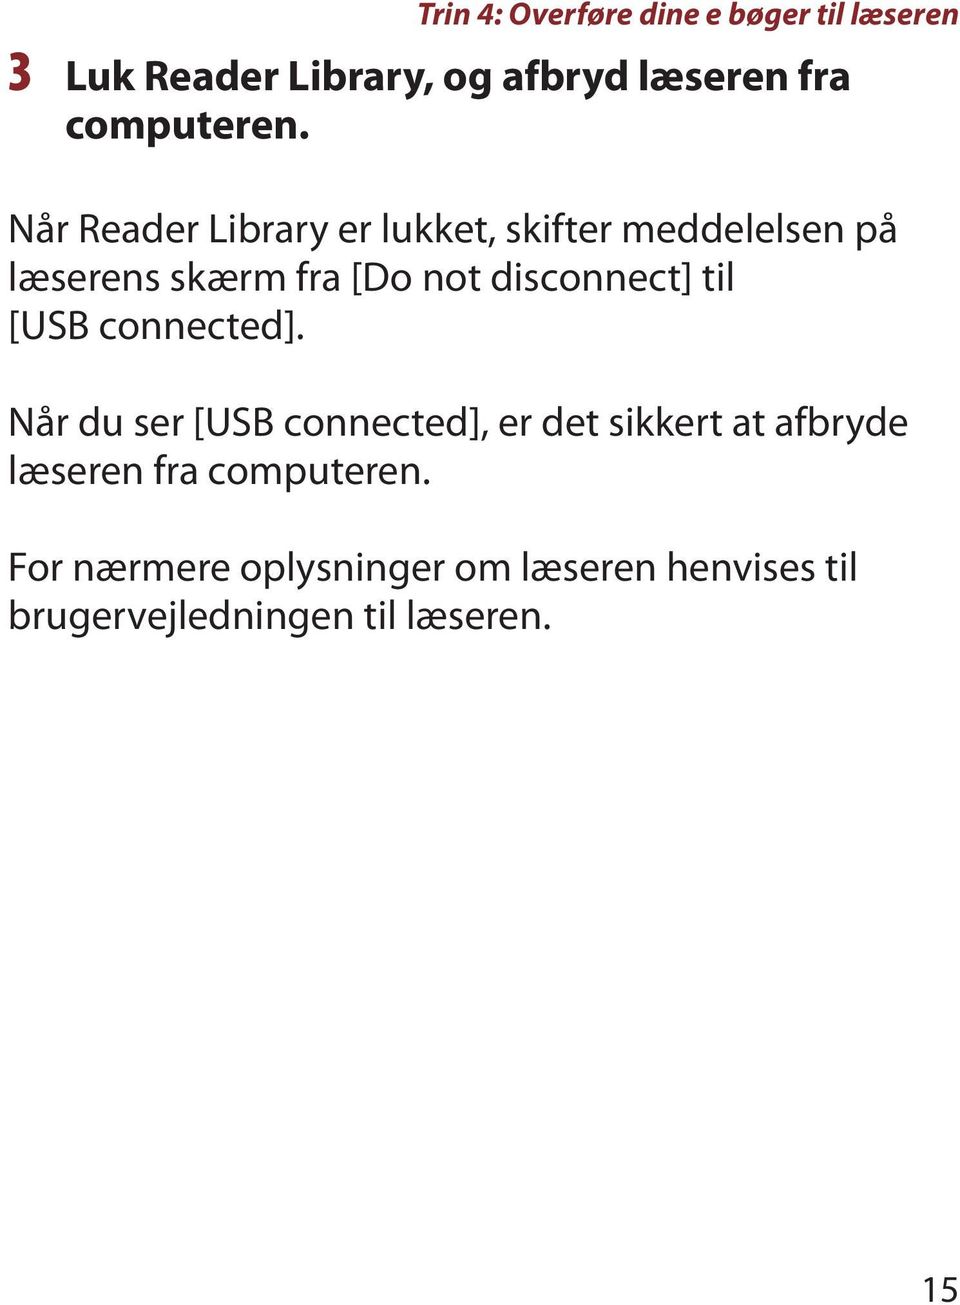 Når Reader Library er lukket, skifter meddelelsen på læserens skærm fra [Do not disconnect]